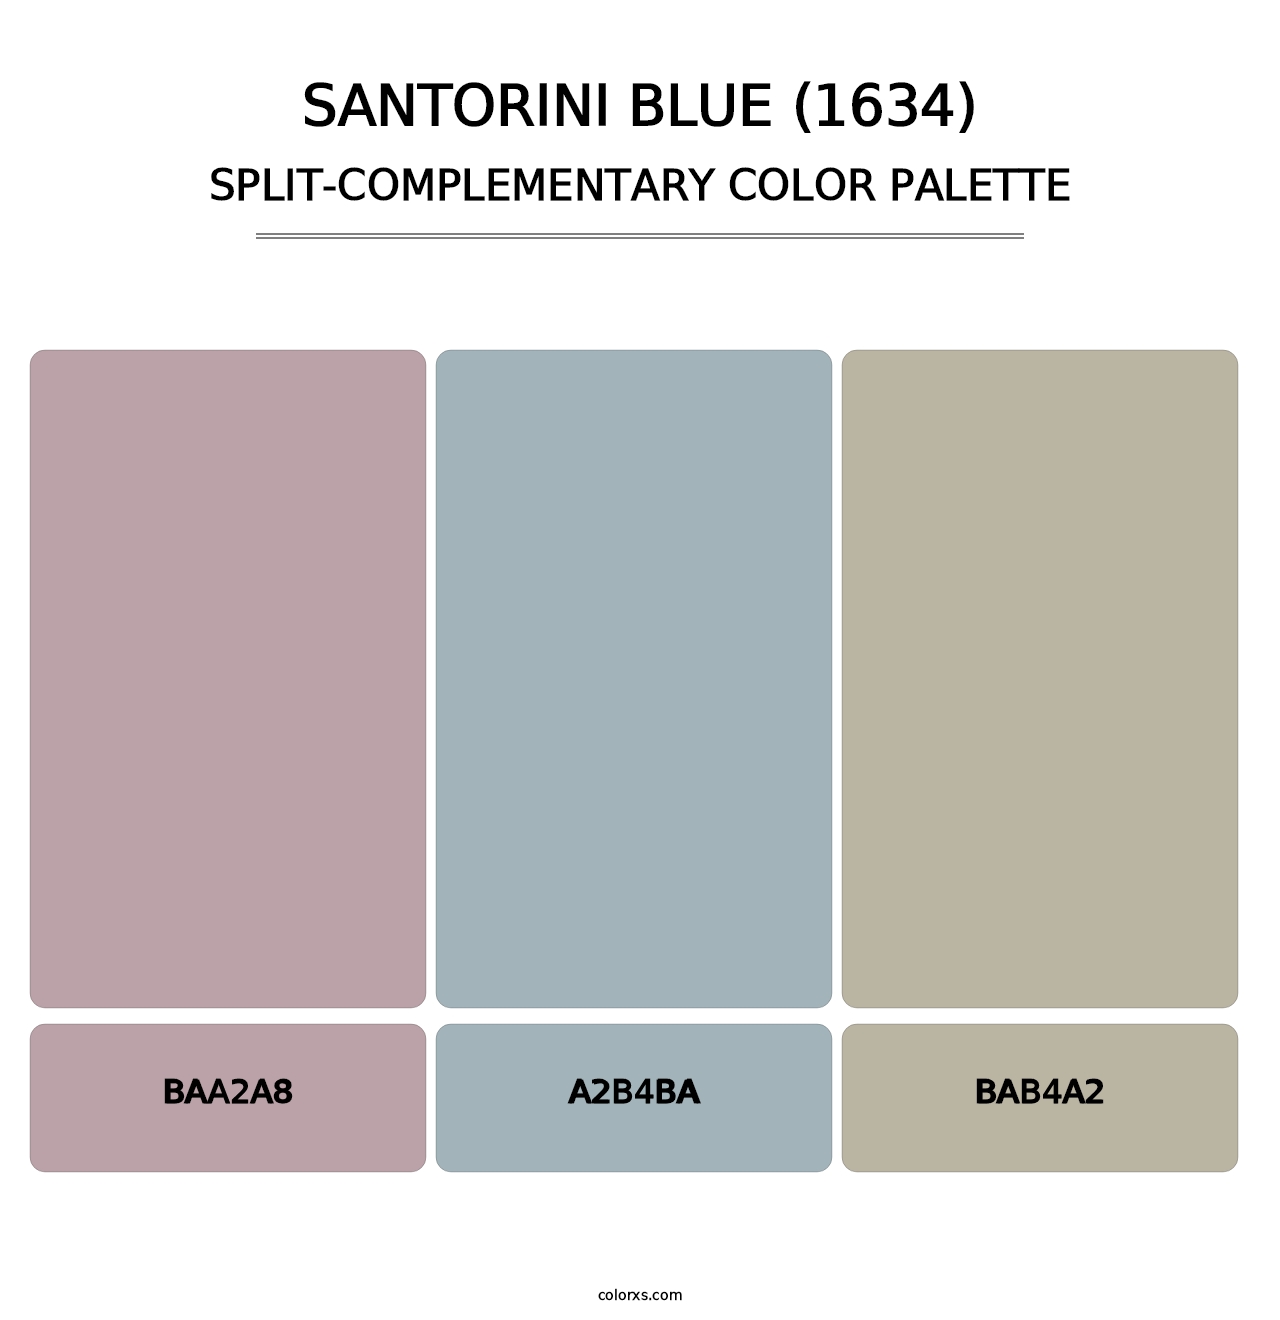 Santorini Blue (1634) - Split-Complementary Color Palette